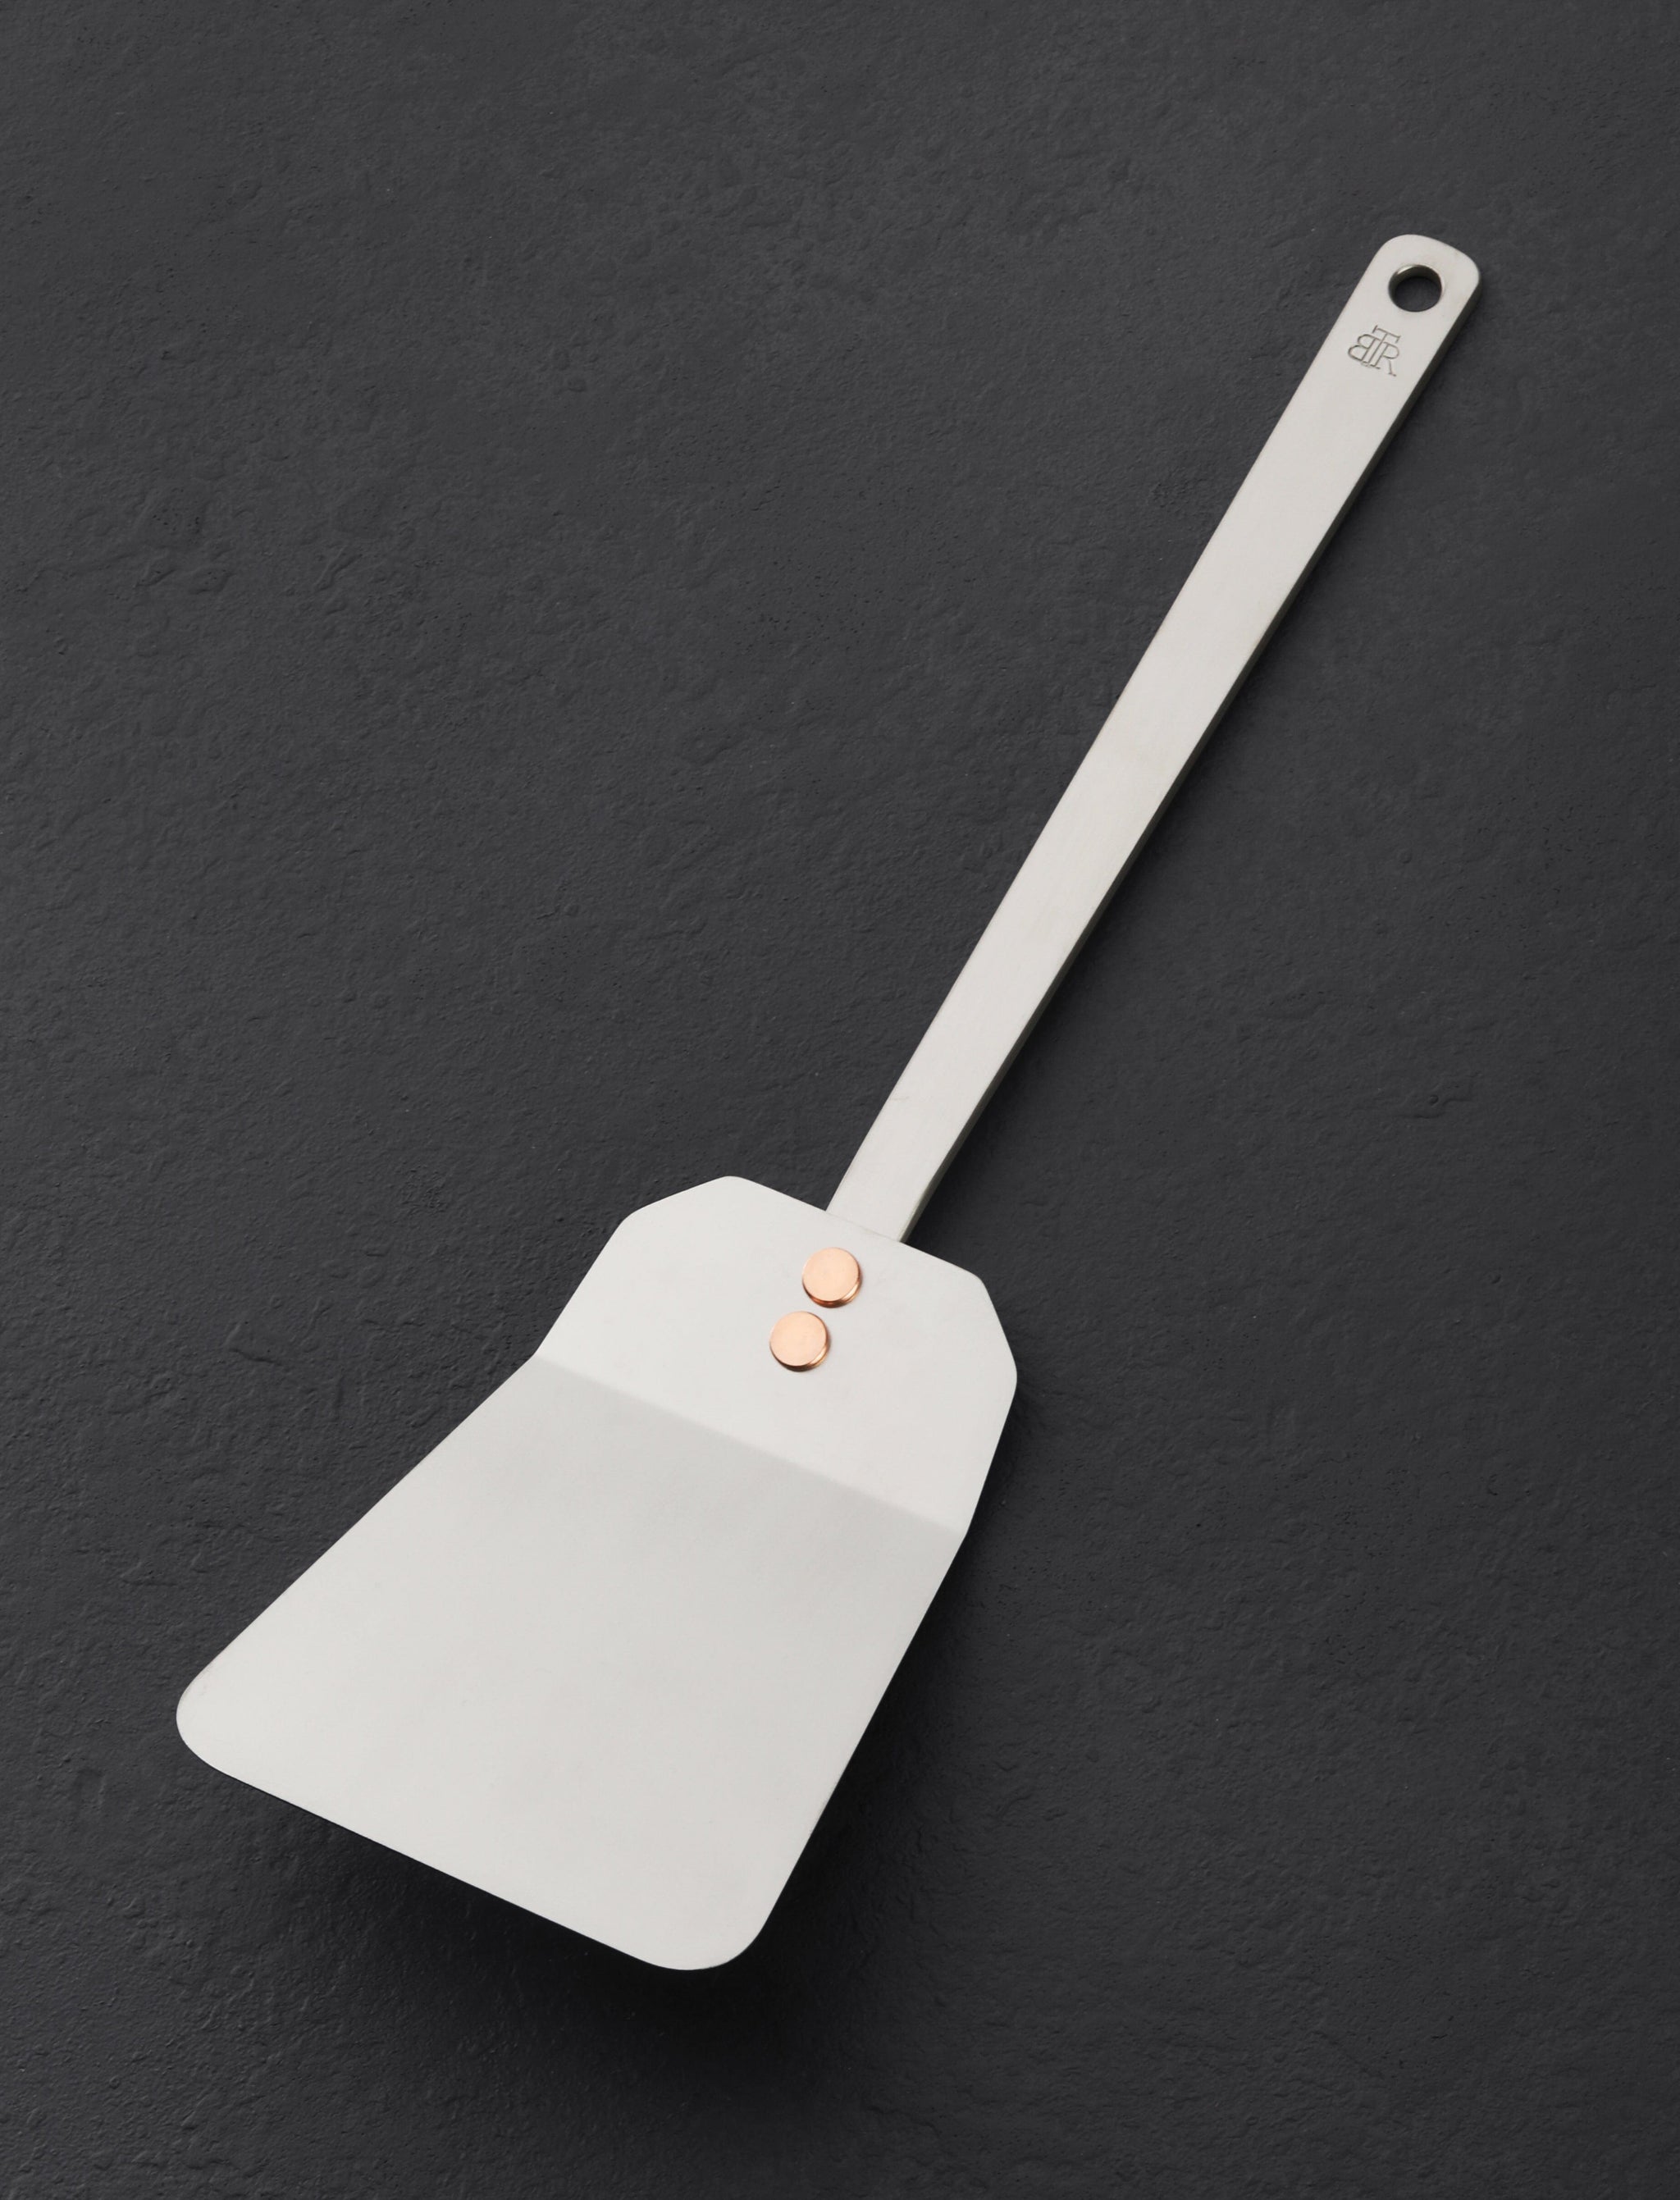 https://eatingtools.com/cdn/shop/files/spatulas-ben-tendick-oregon-wide-head-tispats-titanium-kitchen-spatula-43021990953235.jpg?v=1693336161&width=2048